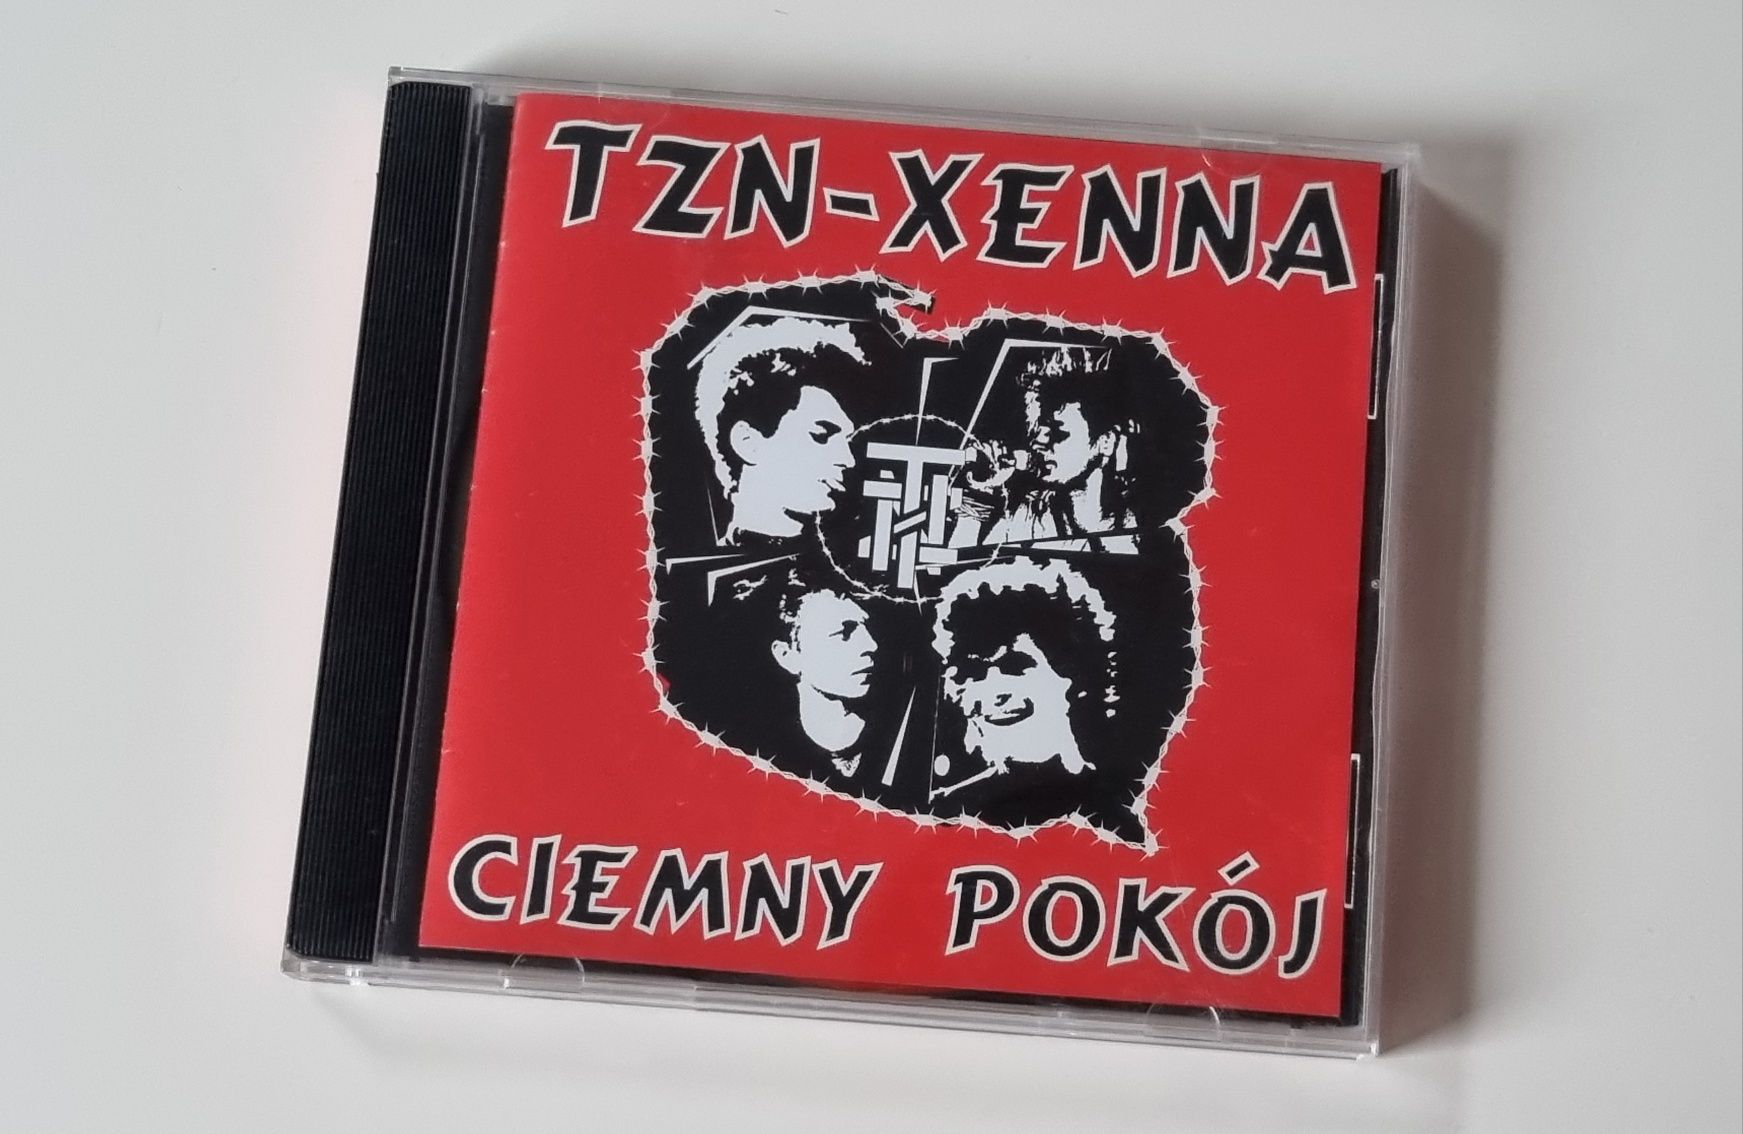 TZN-XENNA - Ciemny pokój - CD, Pop noise